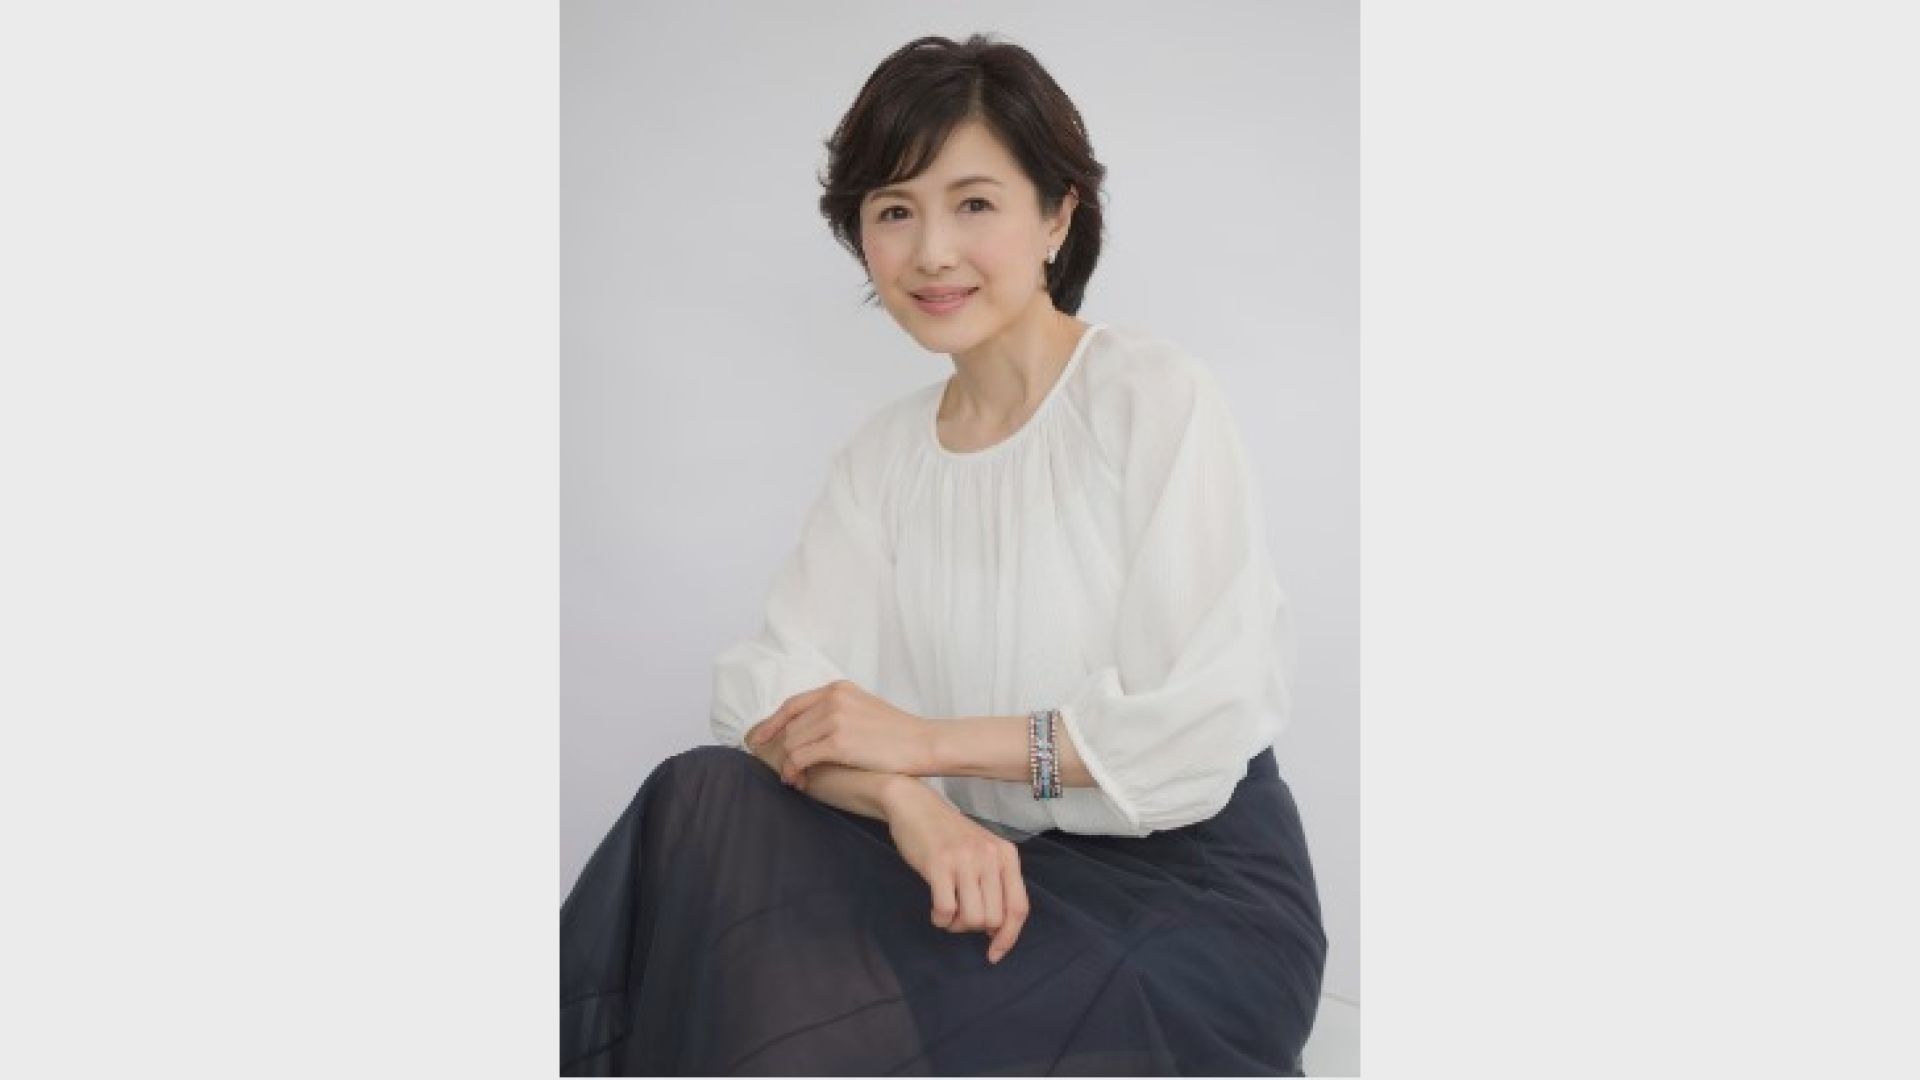 女優・水野真紀さん (52) 保育士試験に合格｢齢52歳、保育士試験に合格致しました。｣